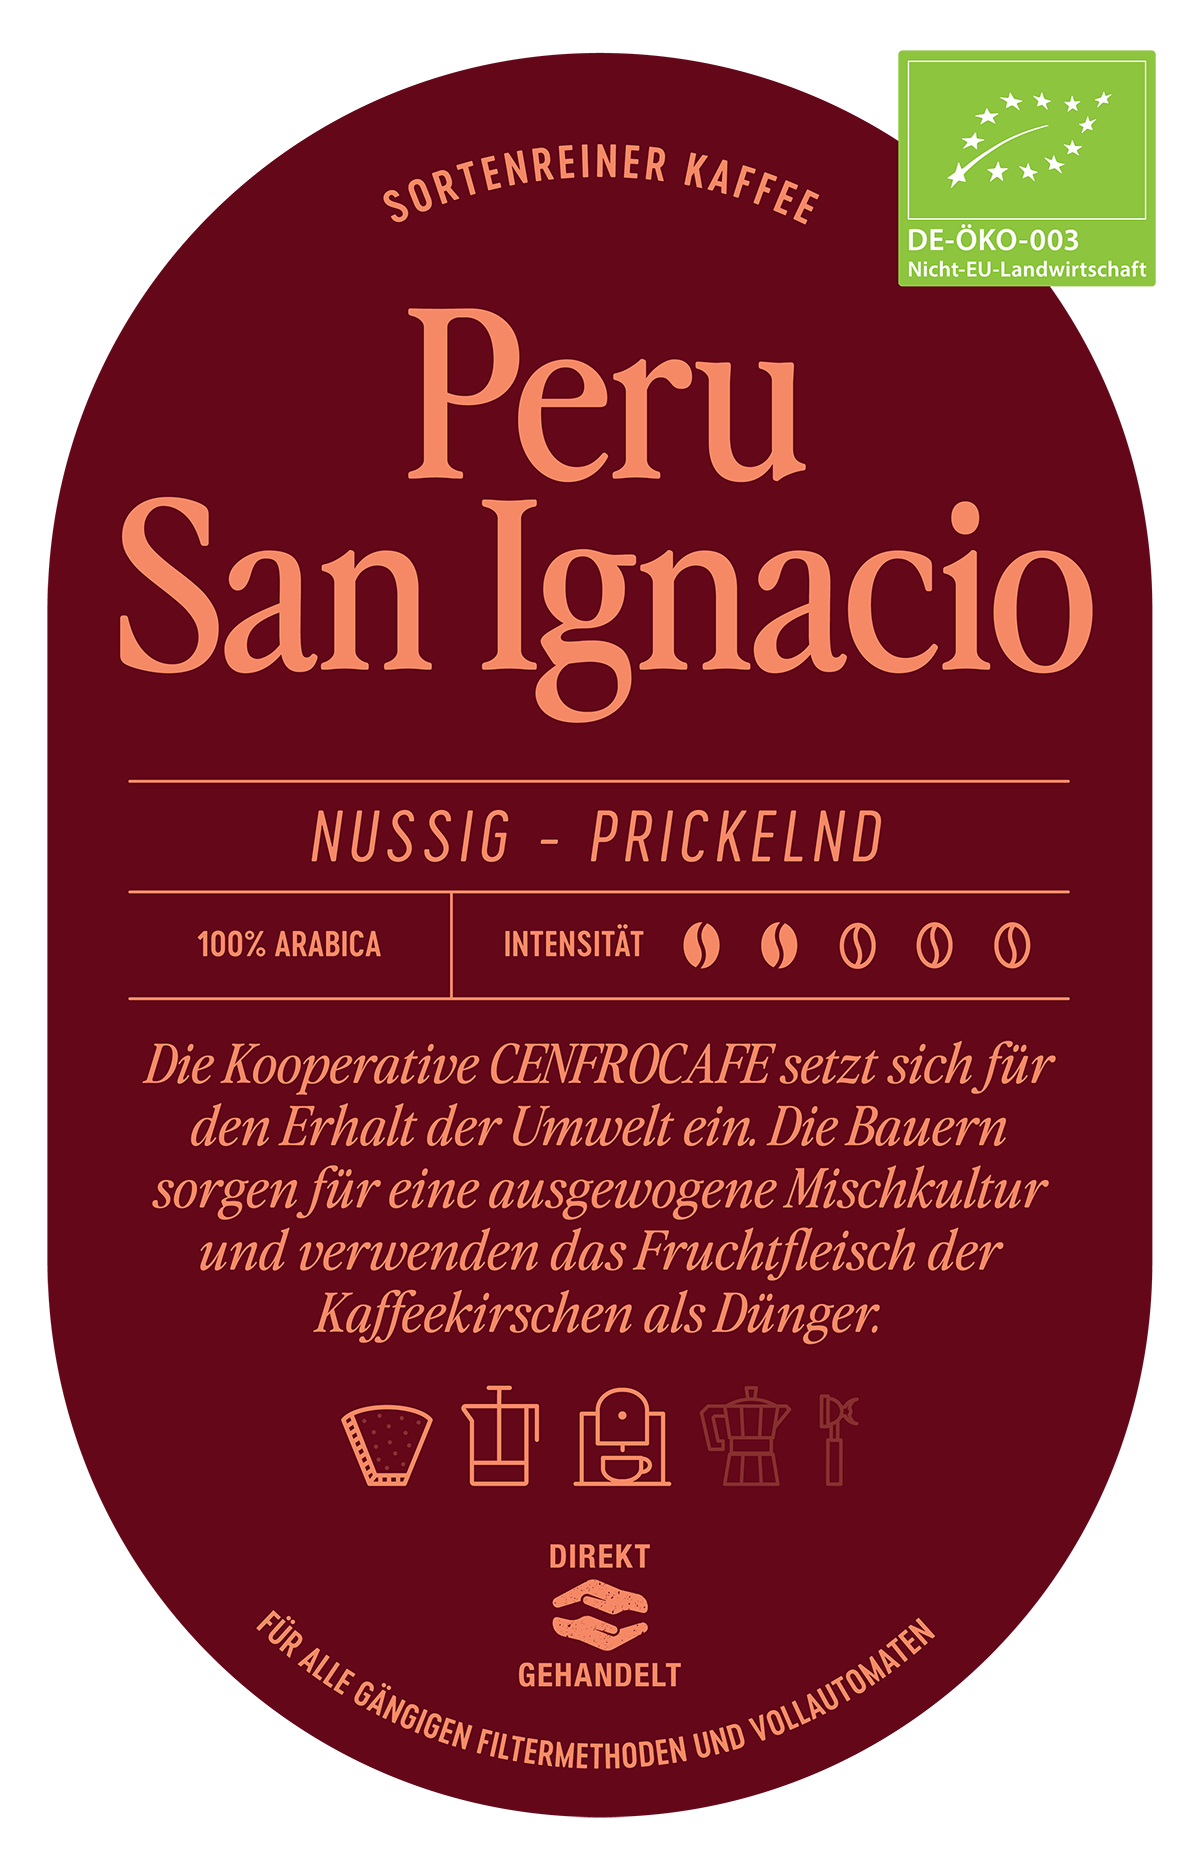 Peru San Ignacio Kaffee Label